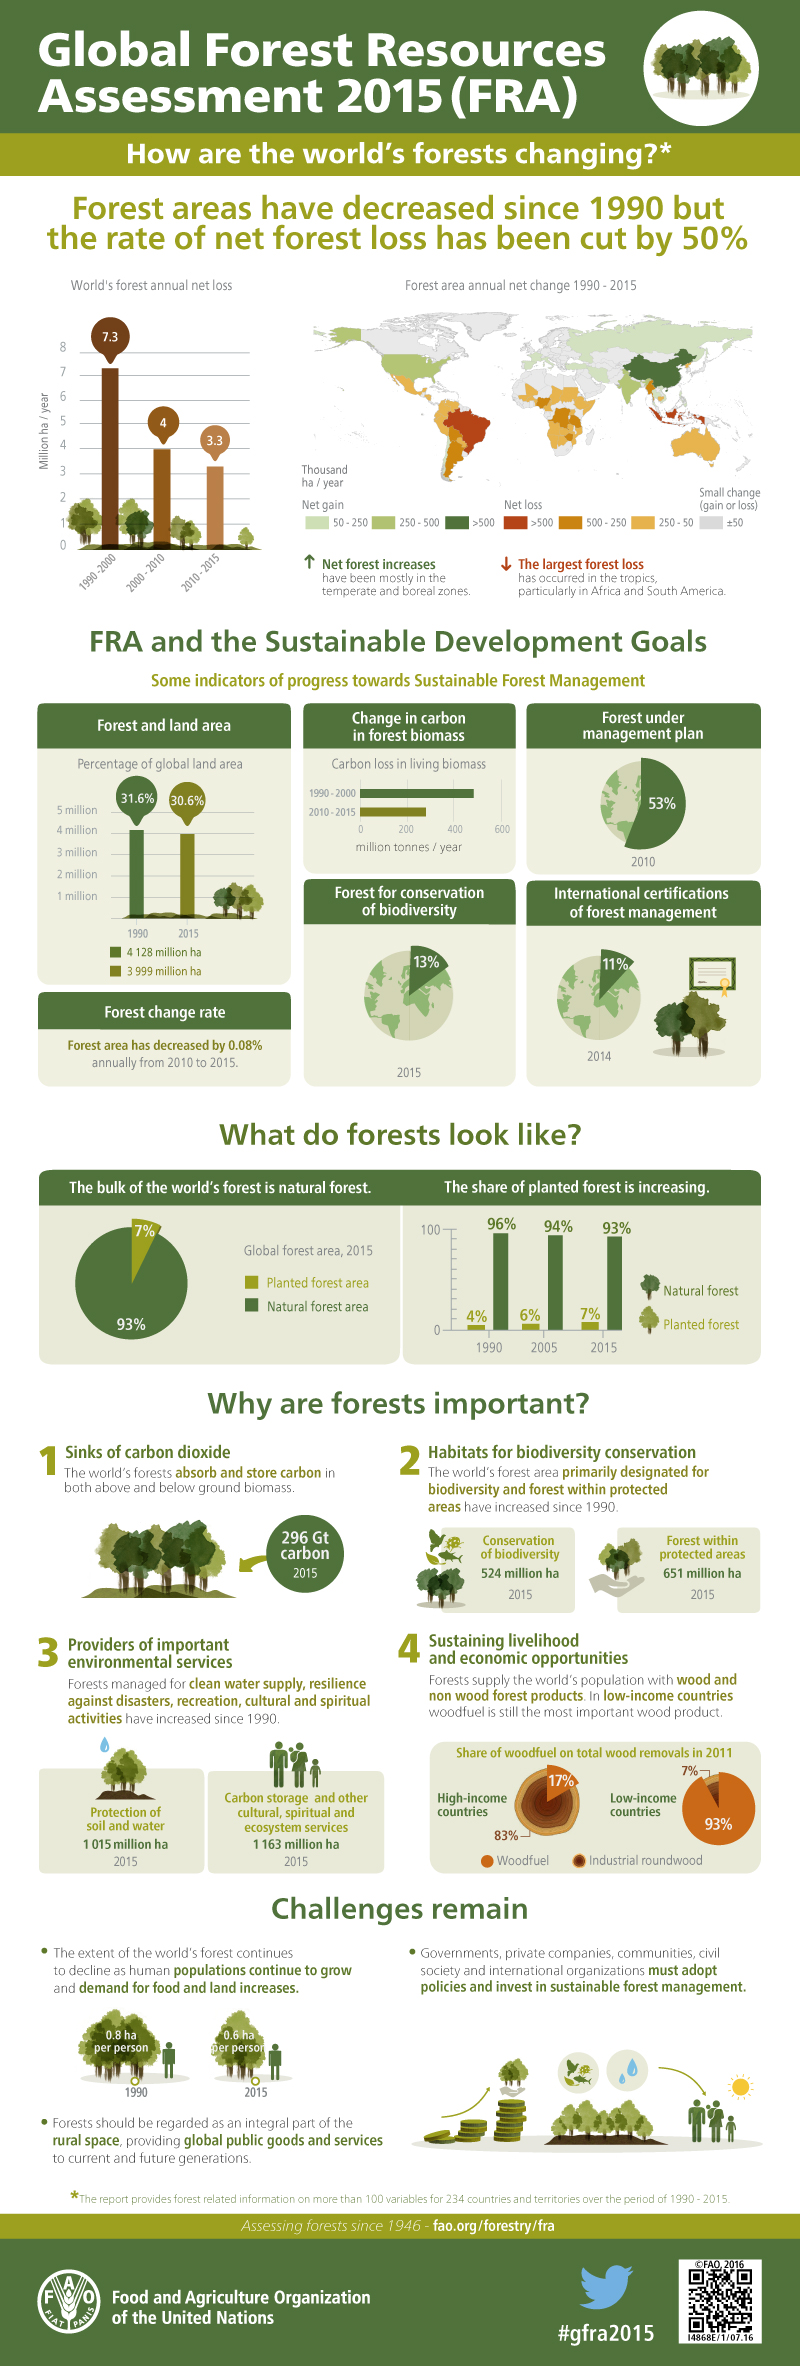 資訊圖像案例_聯合國糧食及農業組織_Global Forest Resources Assessment 2015 - How are the world’s forests changing?